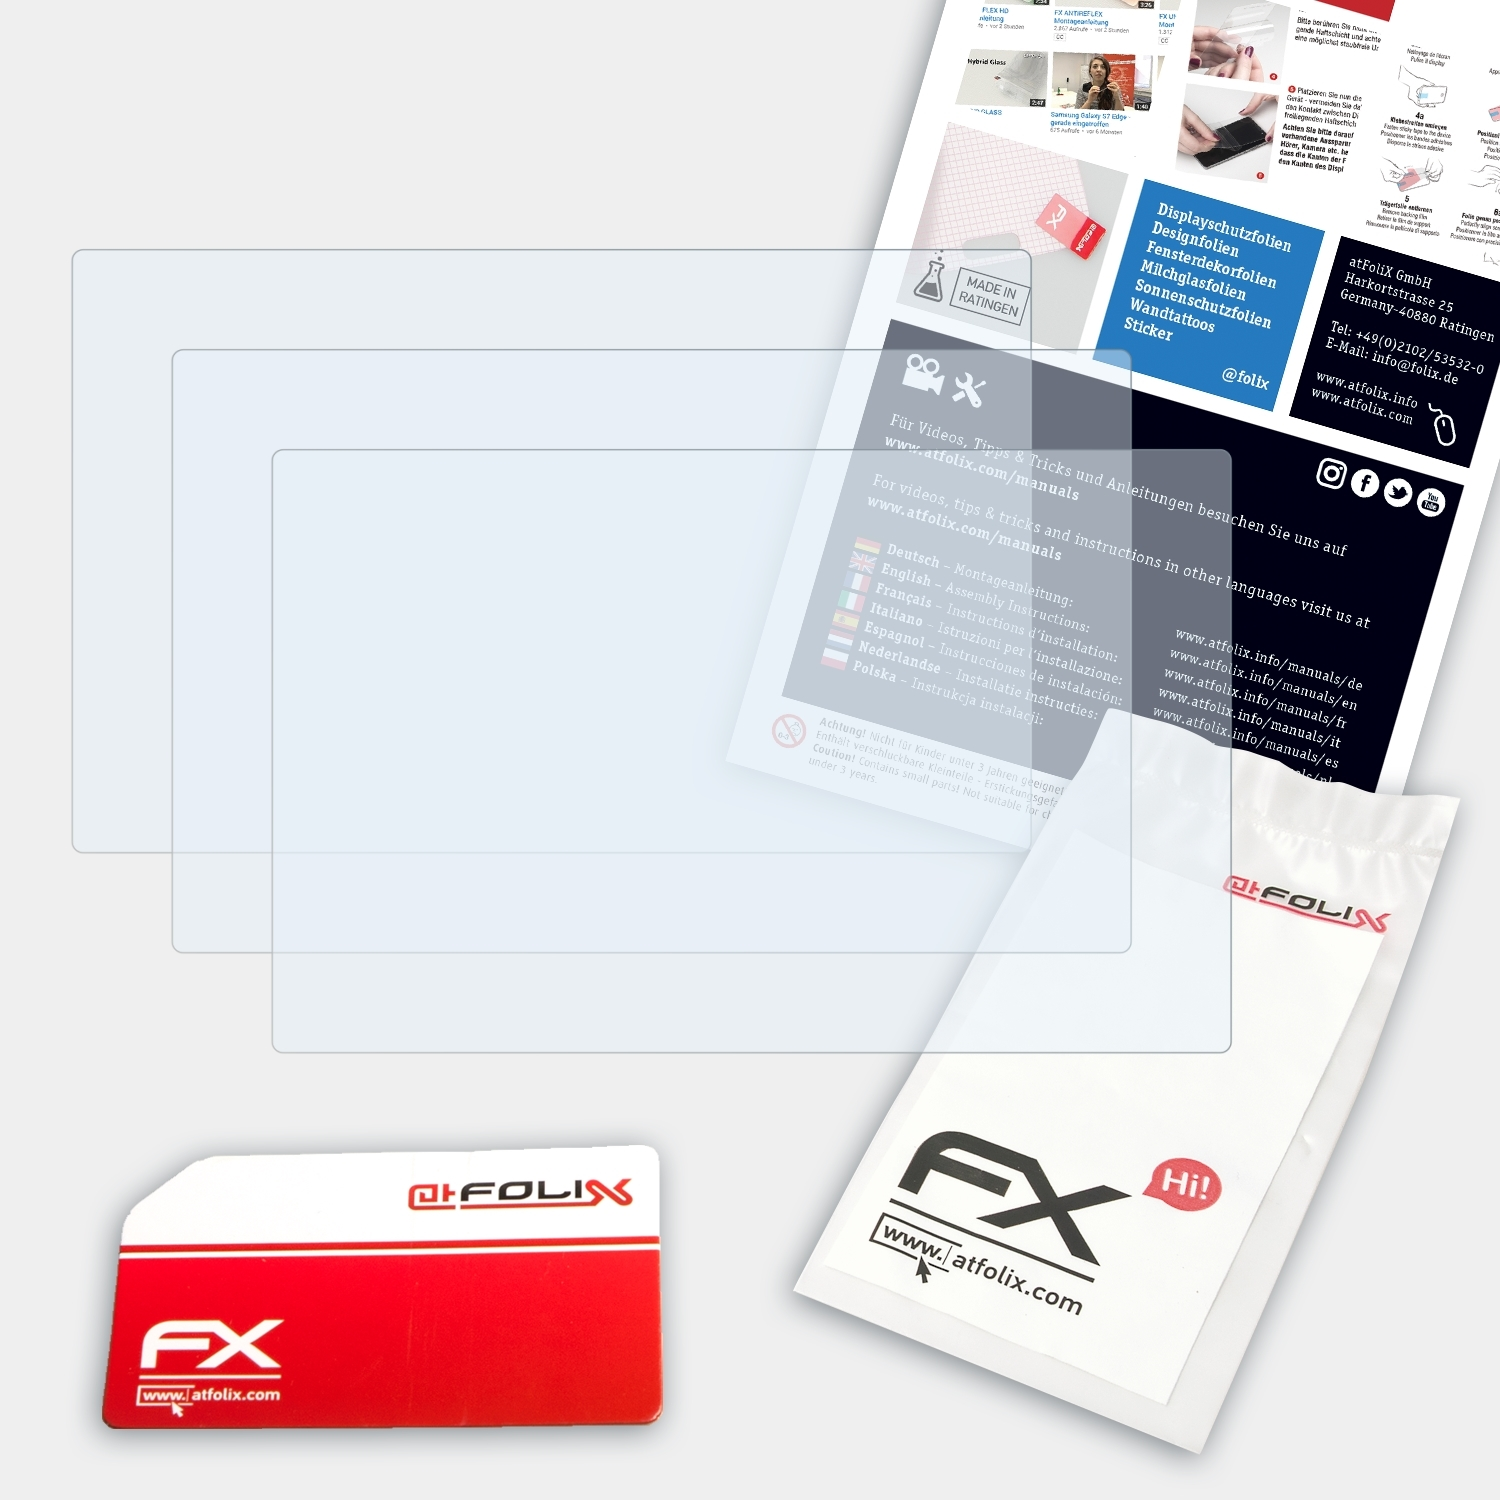 3x (N1000)) ATFOLIX Go FX-Clear Displayschutz(für Sony PSP